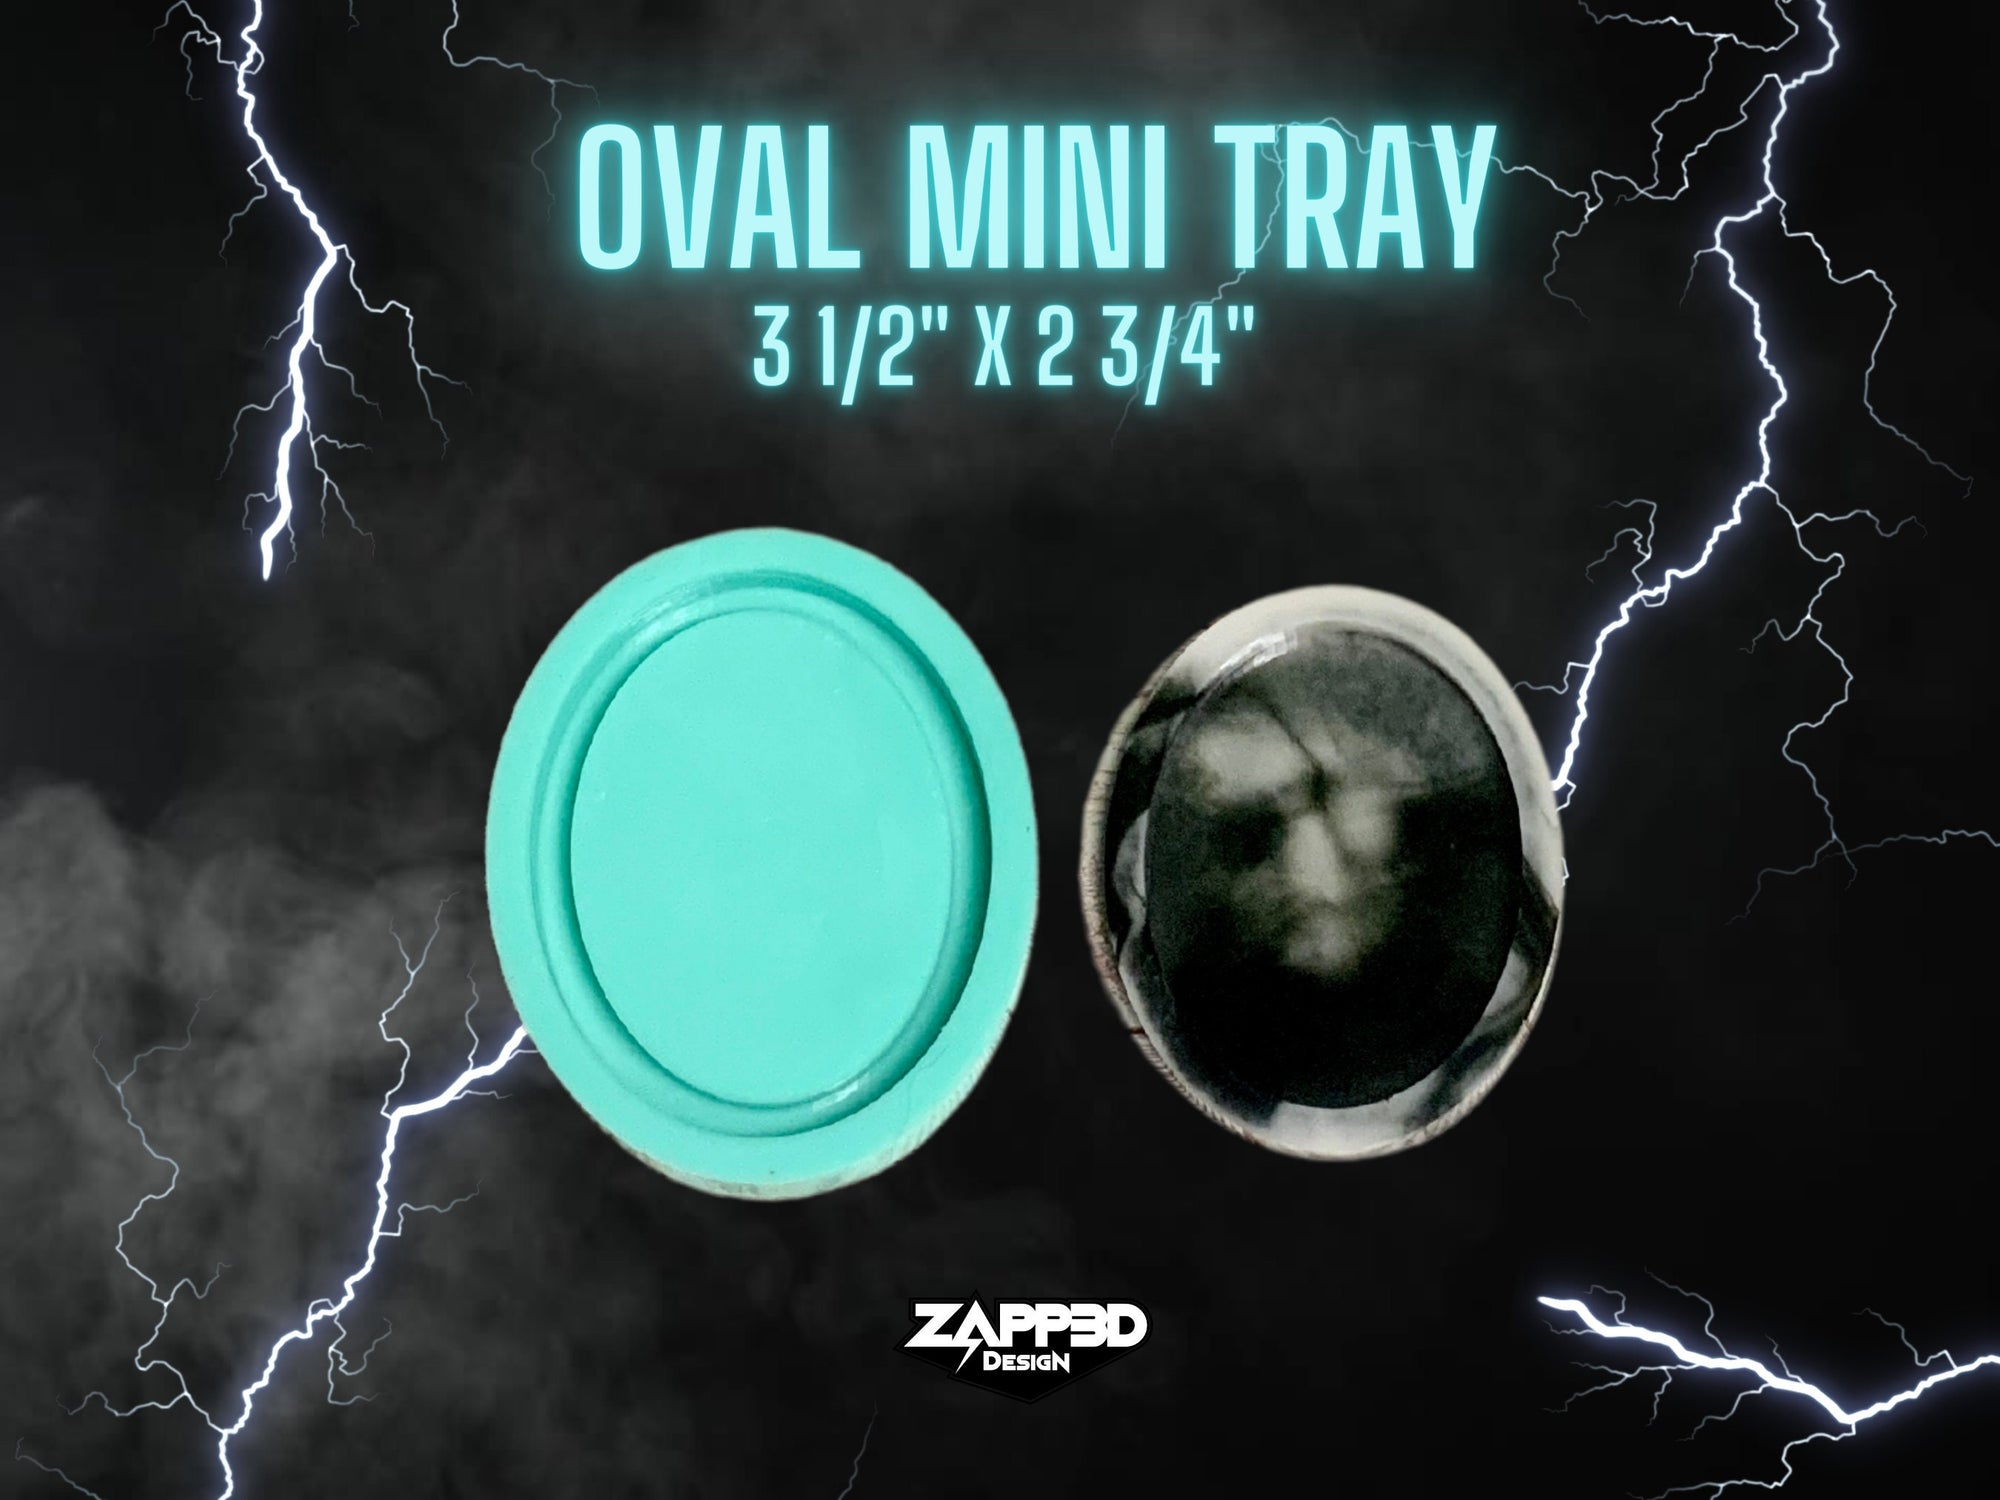 Oval Mini Tray Molds, Small Tray Mold, Resin Mini Tray Mold, Shaker Mold, Oval Mold, Tray Mold